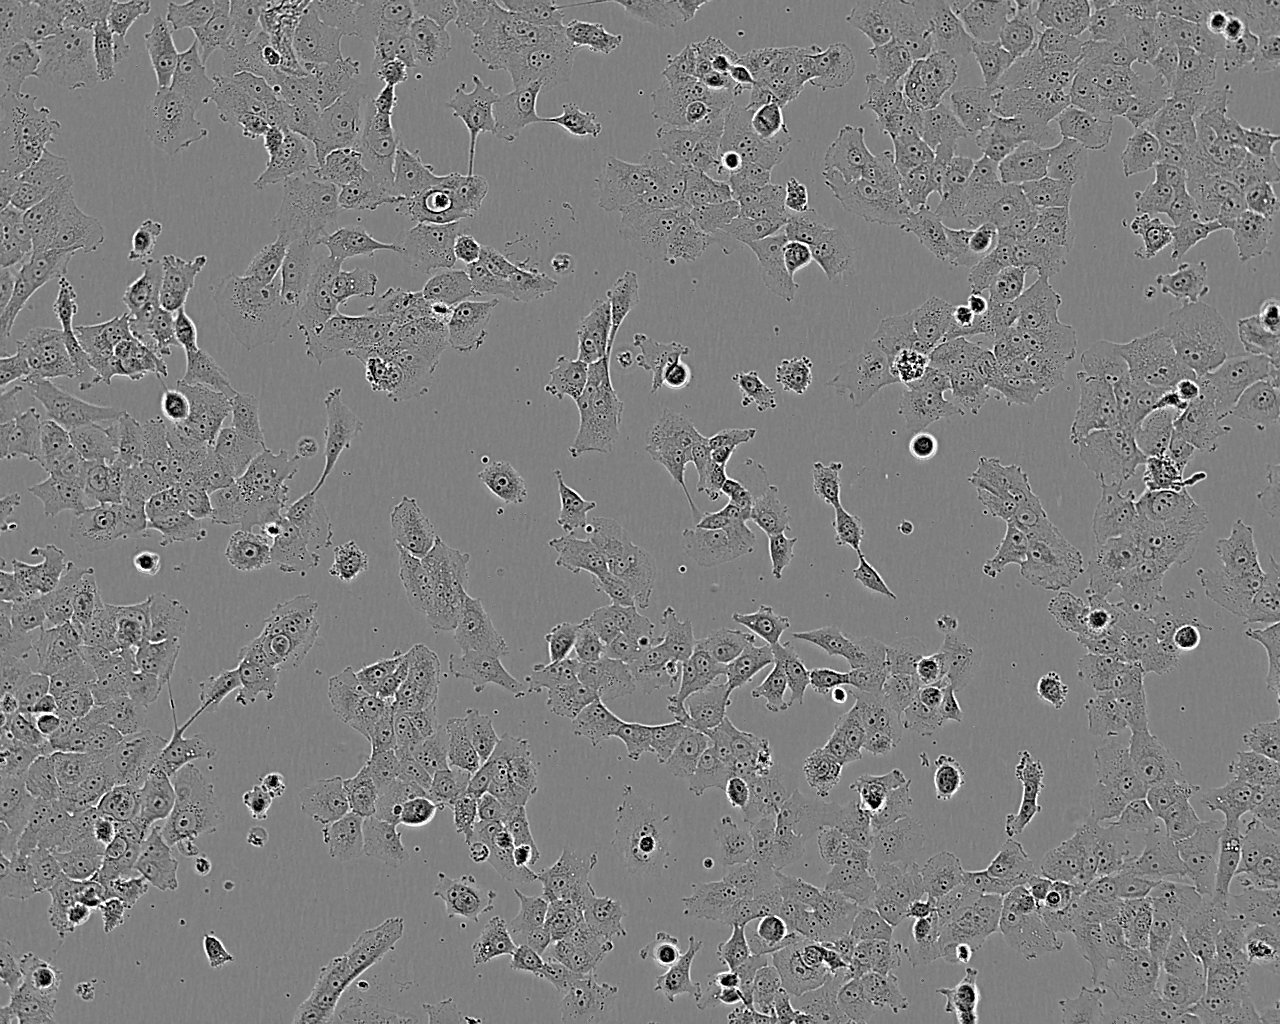 KNS-42 Cell:人脑胶质瘤细胞系,KNS-42 Cell